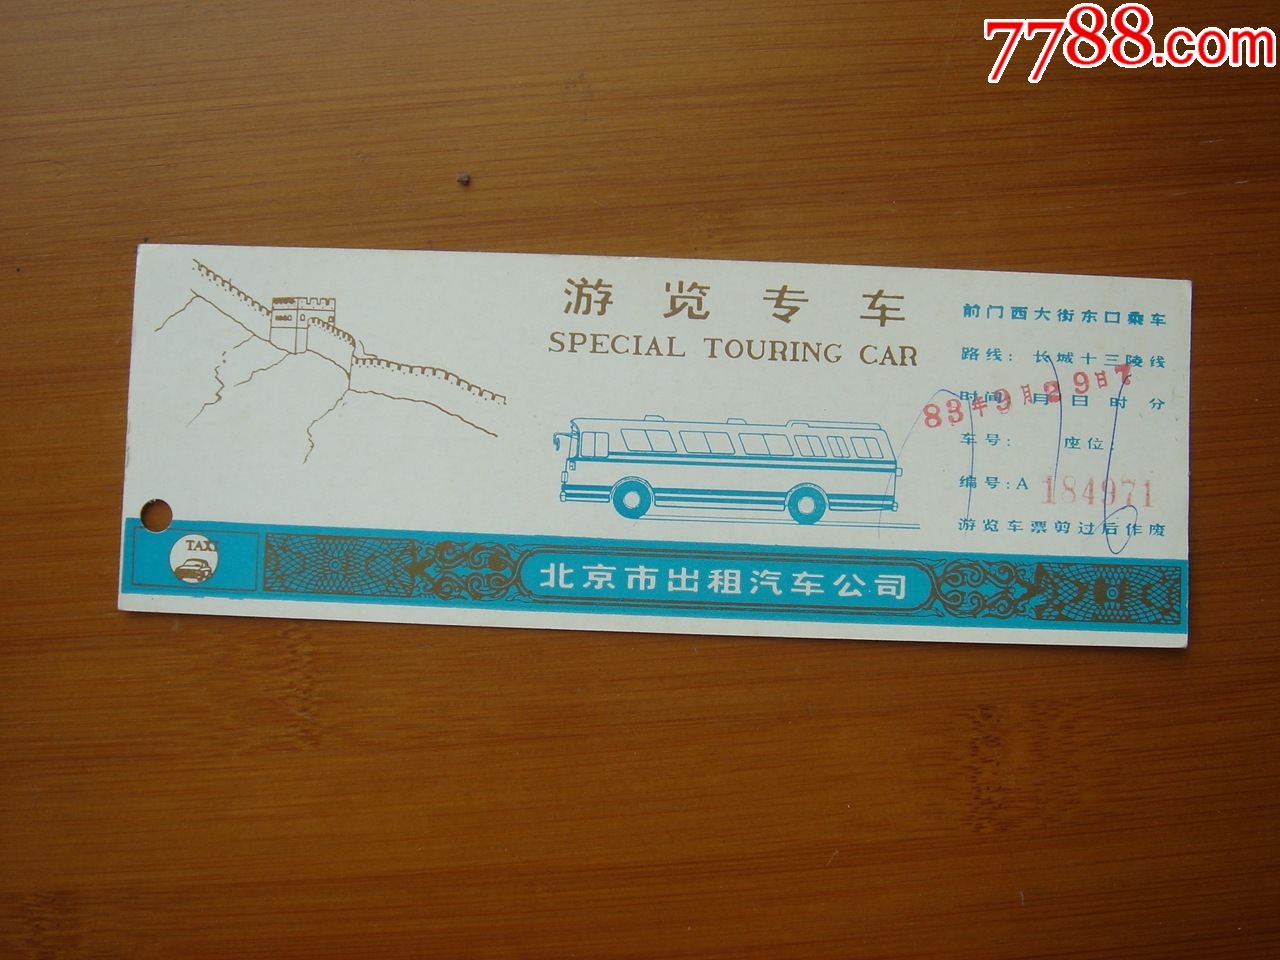 北京公交巴士旅游车票2张-价格:10元-se91252137-汽车票-零售-7788收藏__收藏热线